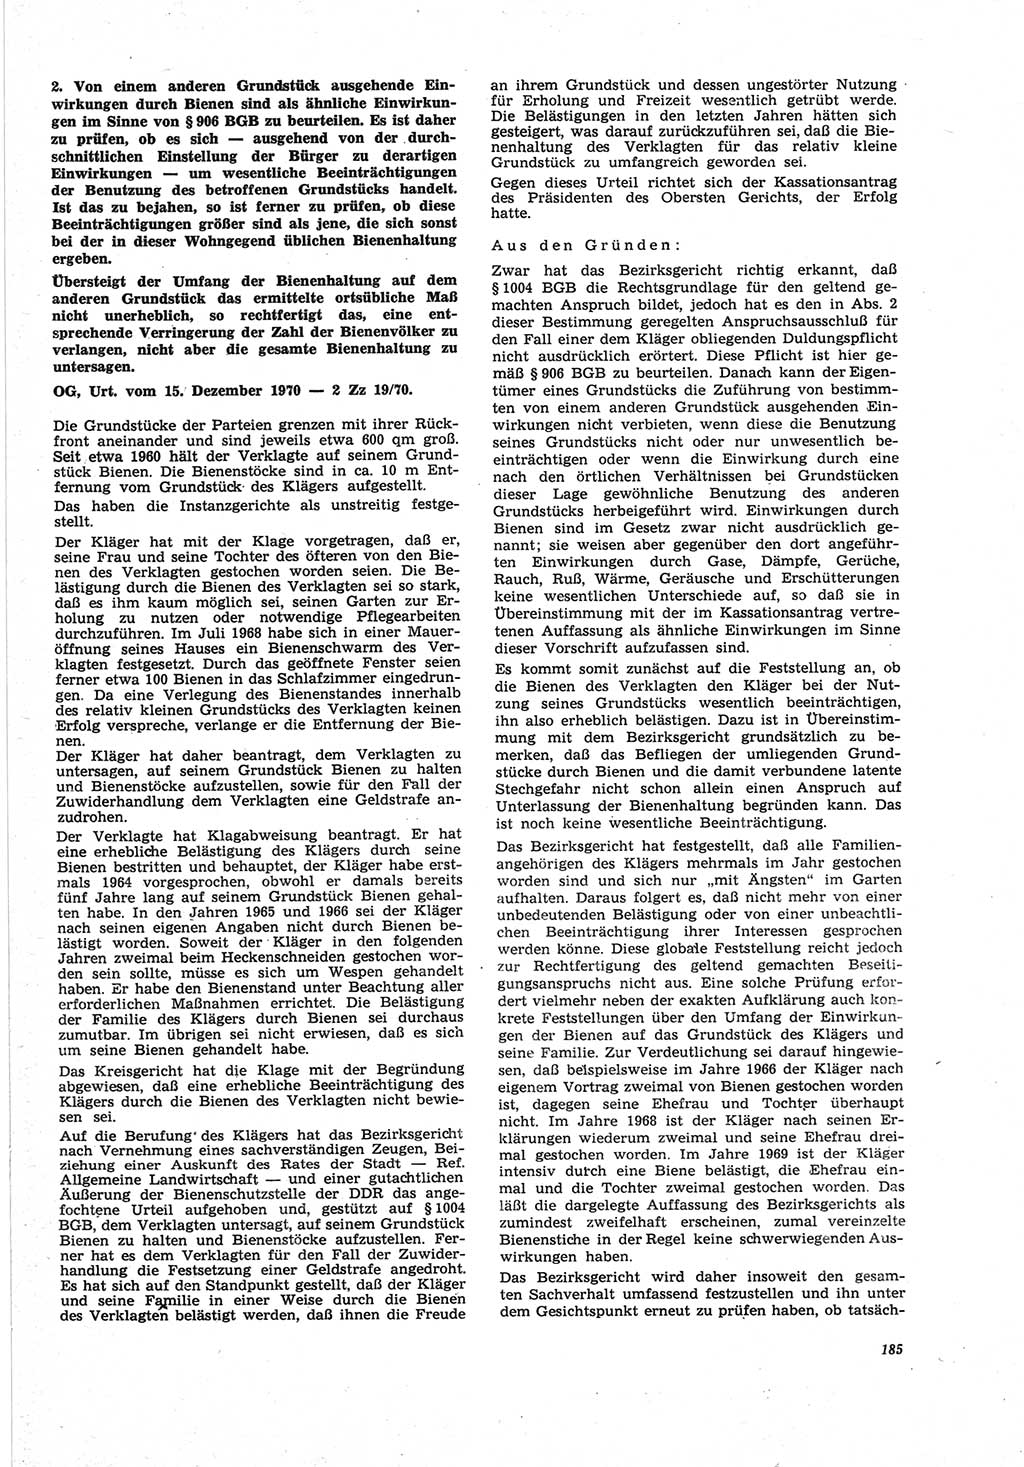 Neue Justiz (NJ), Zeitschrift für Recht und Rechtswissenschaft [Deutsche Demokratische Republik (DDR)], 25. Jahrgang 1971, Seite 185 (NJ DDR 1971, S. 185)